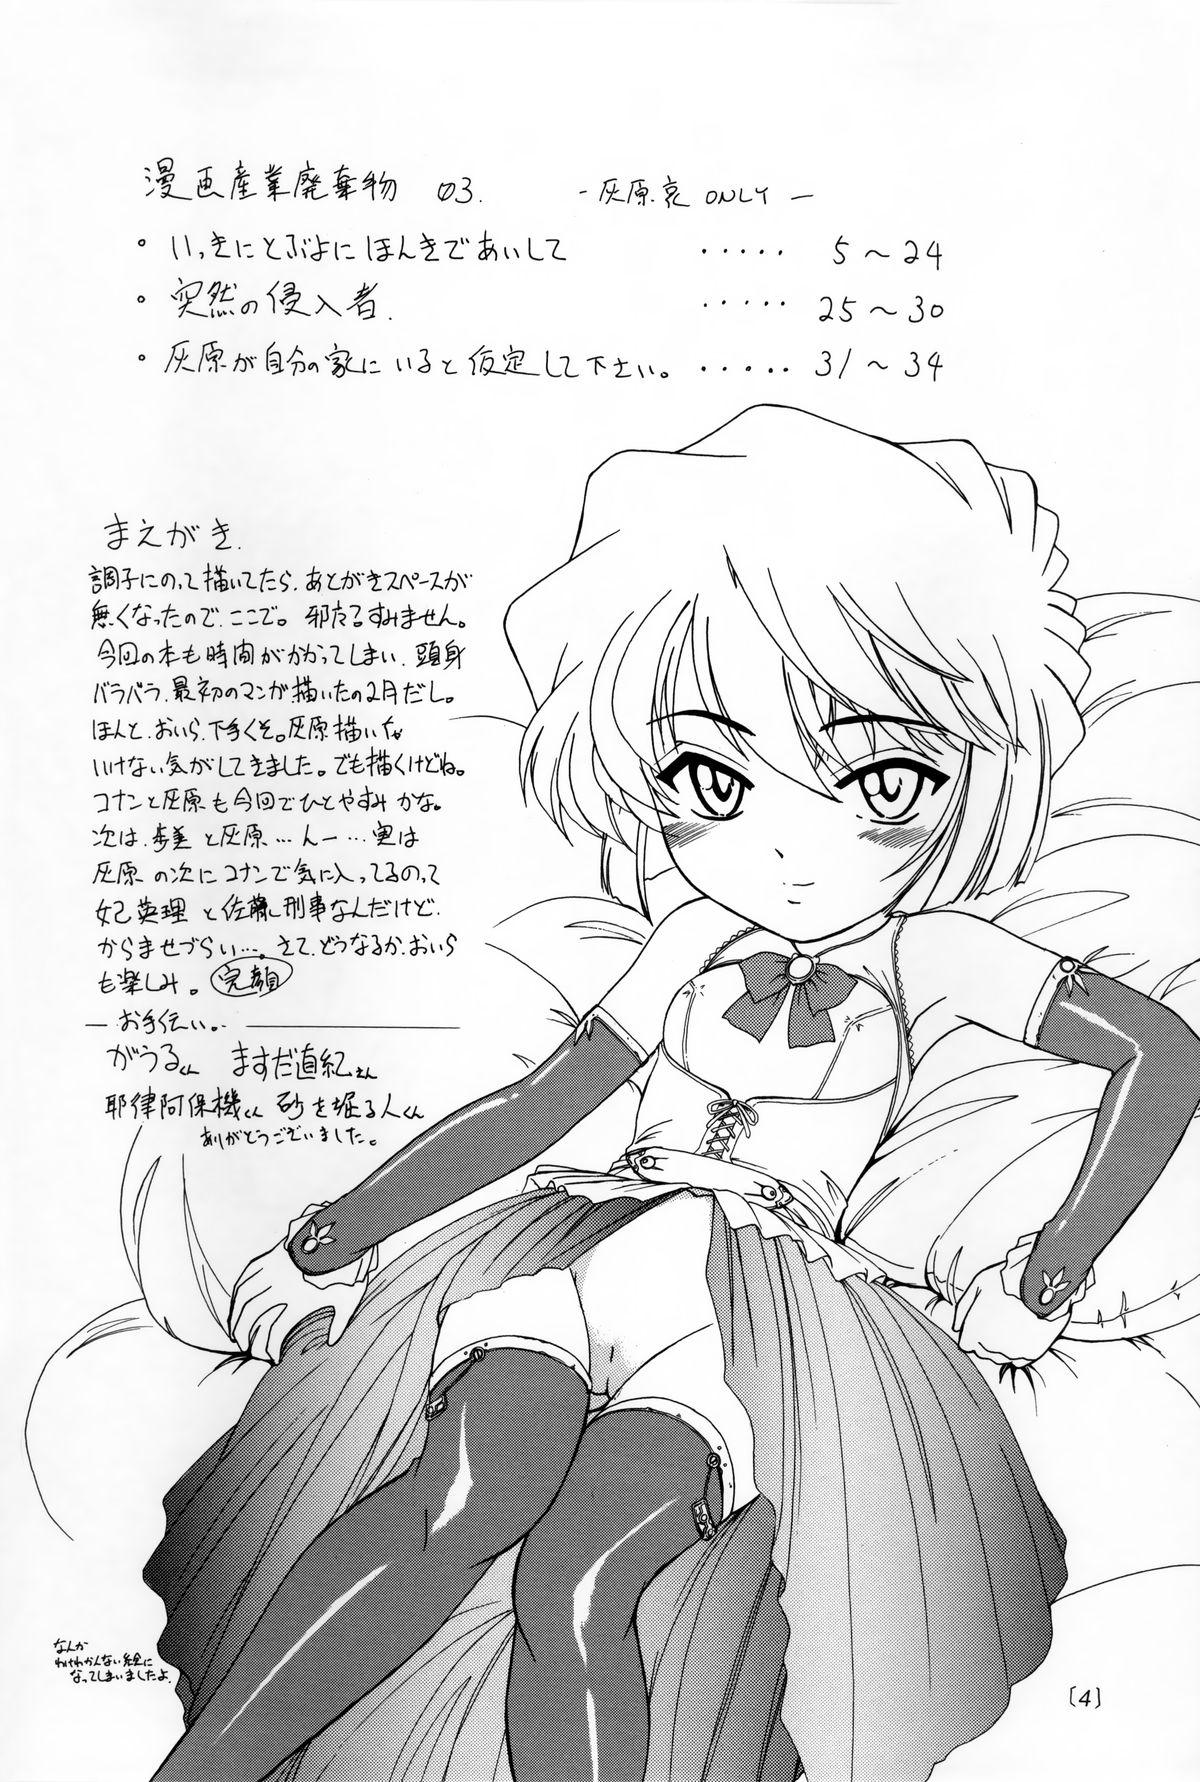 Short Manga Sangyou Haikibutsu 03 - Detective conan 18 Porn - Page 3